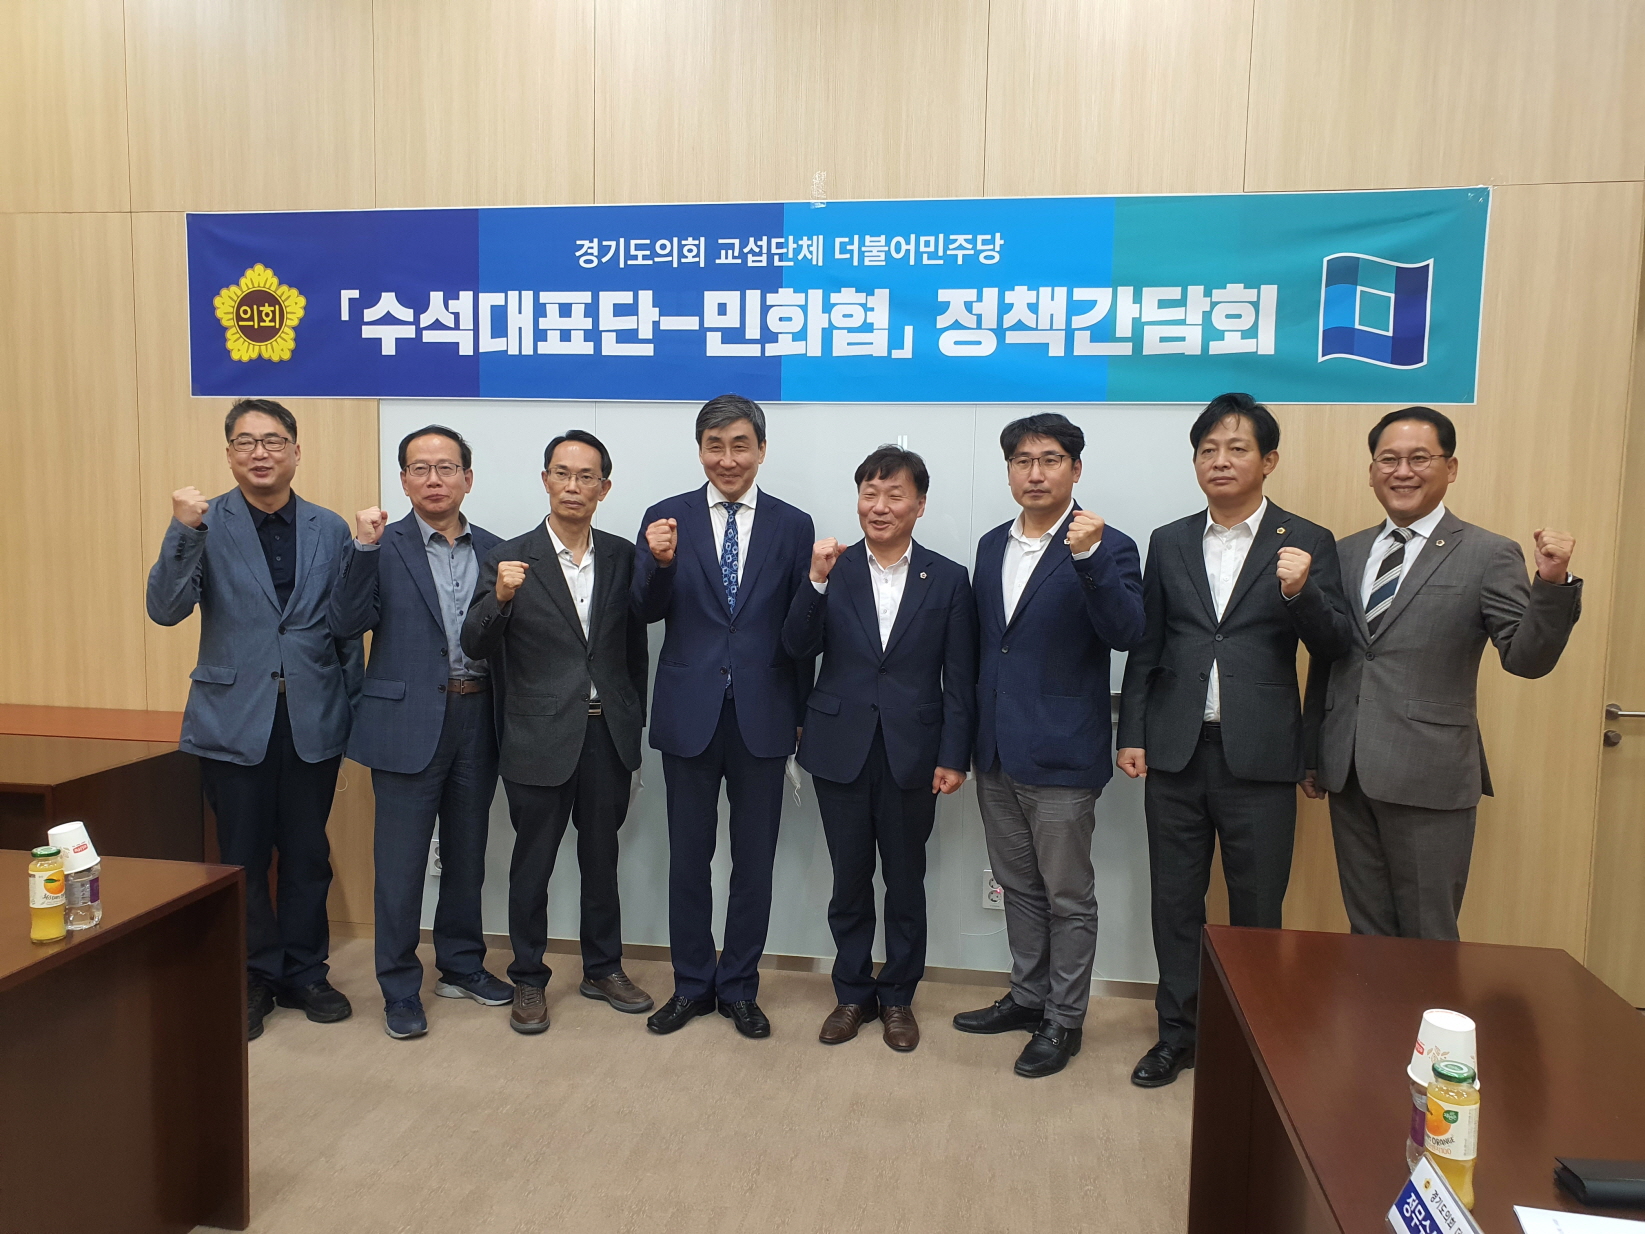 경기도의회 더불어민주당 민화협 관계자와 정담회 진행